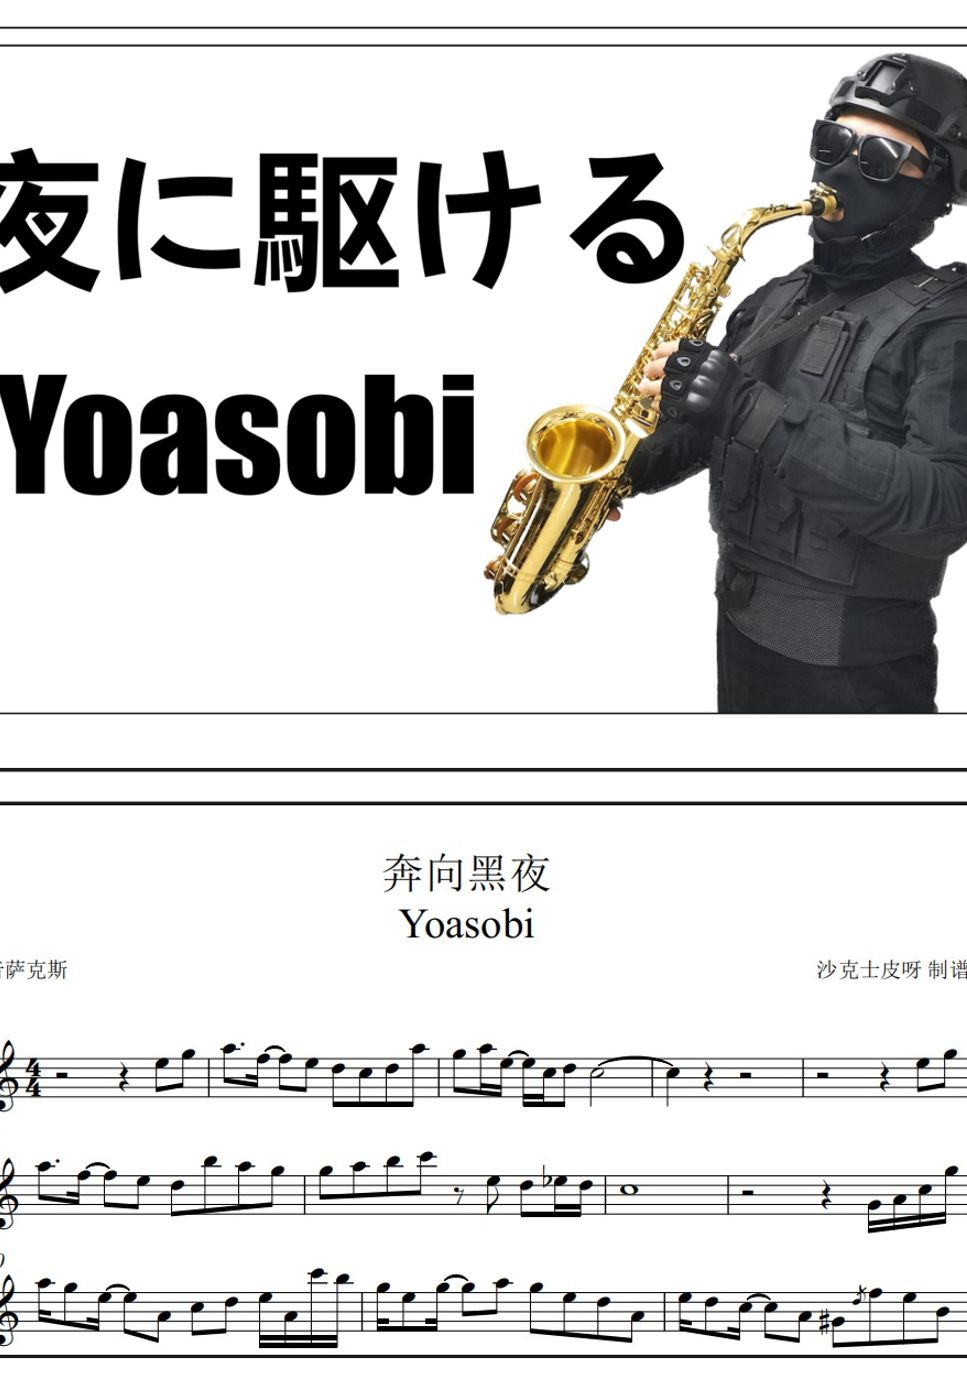 Yoasobi - Into the night by 沙克士皮呀